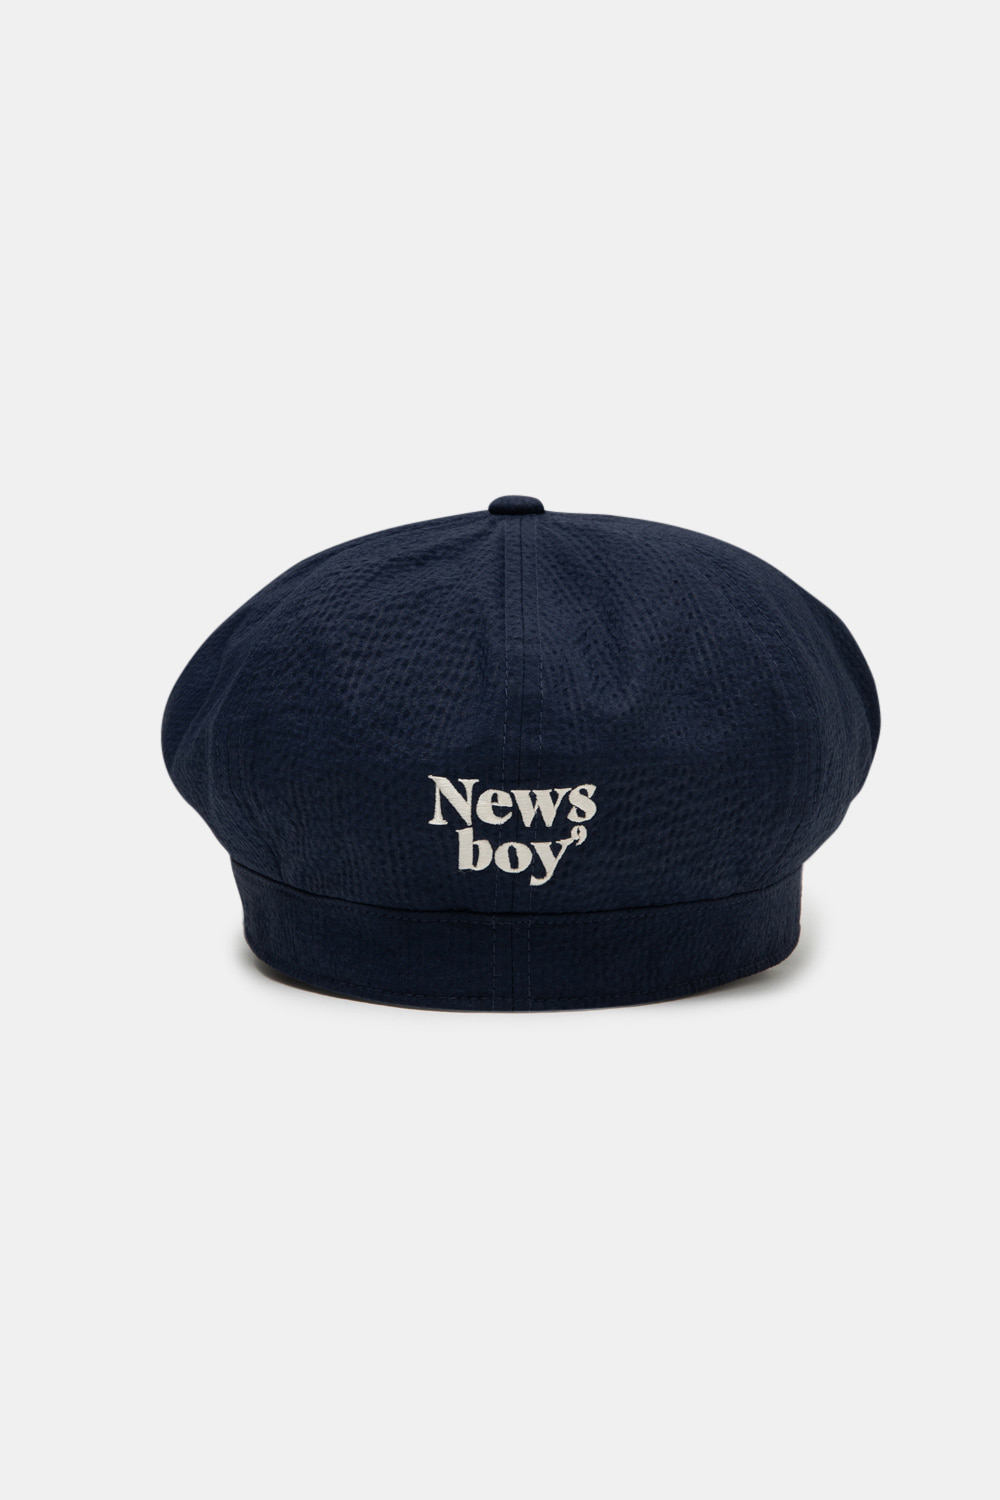 NEWSBOY CAP_NAVY